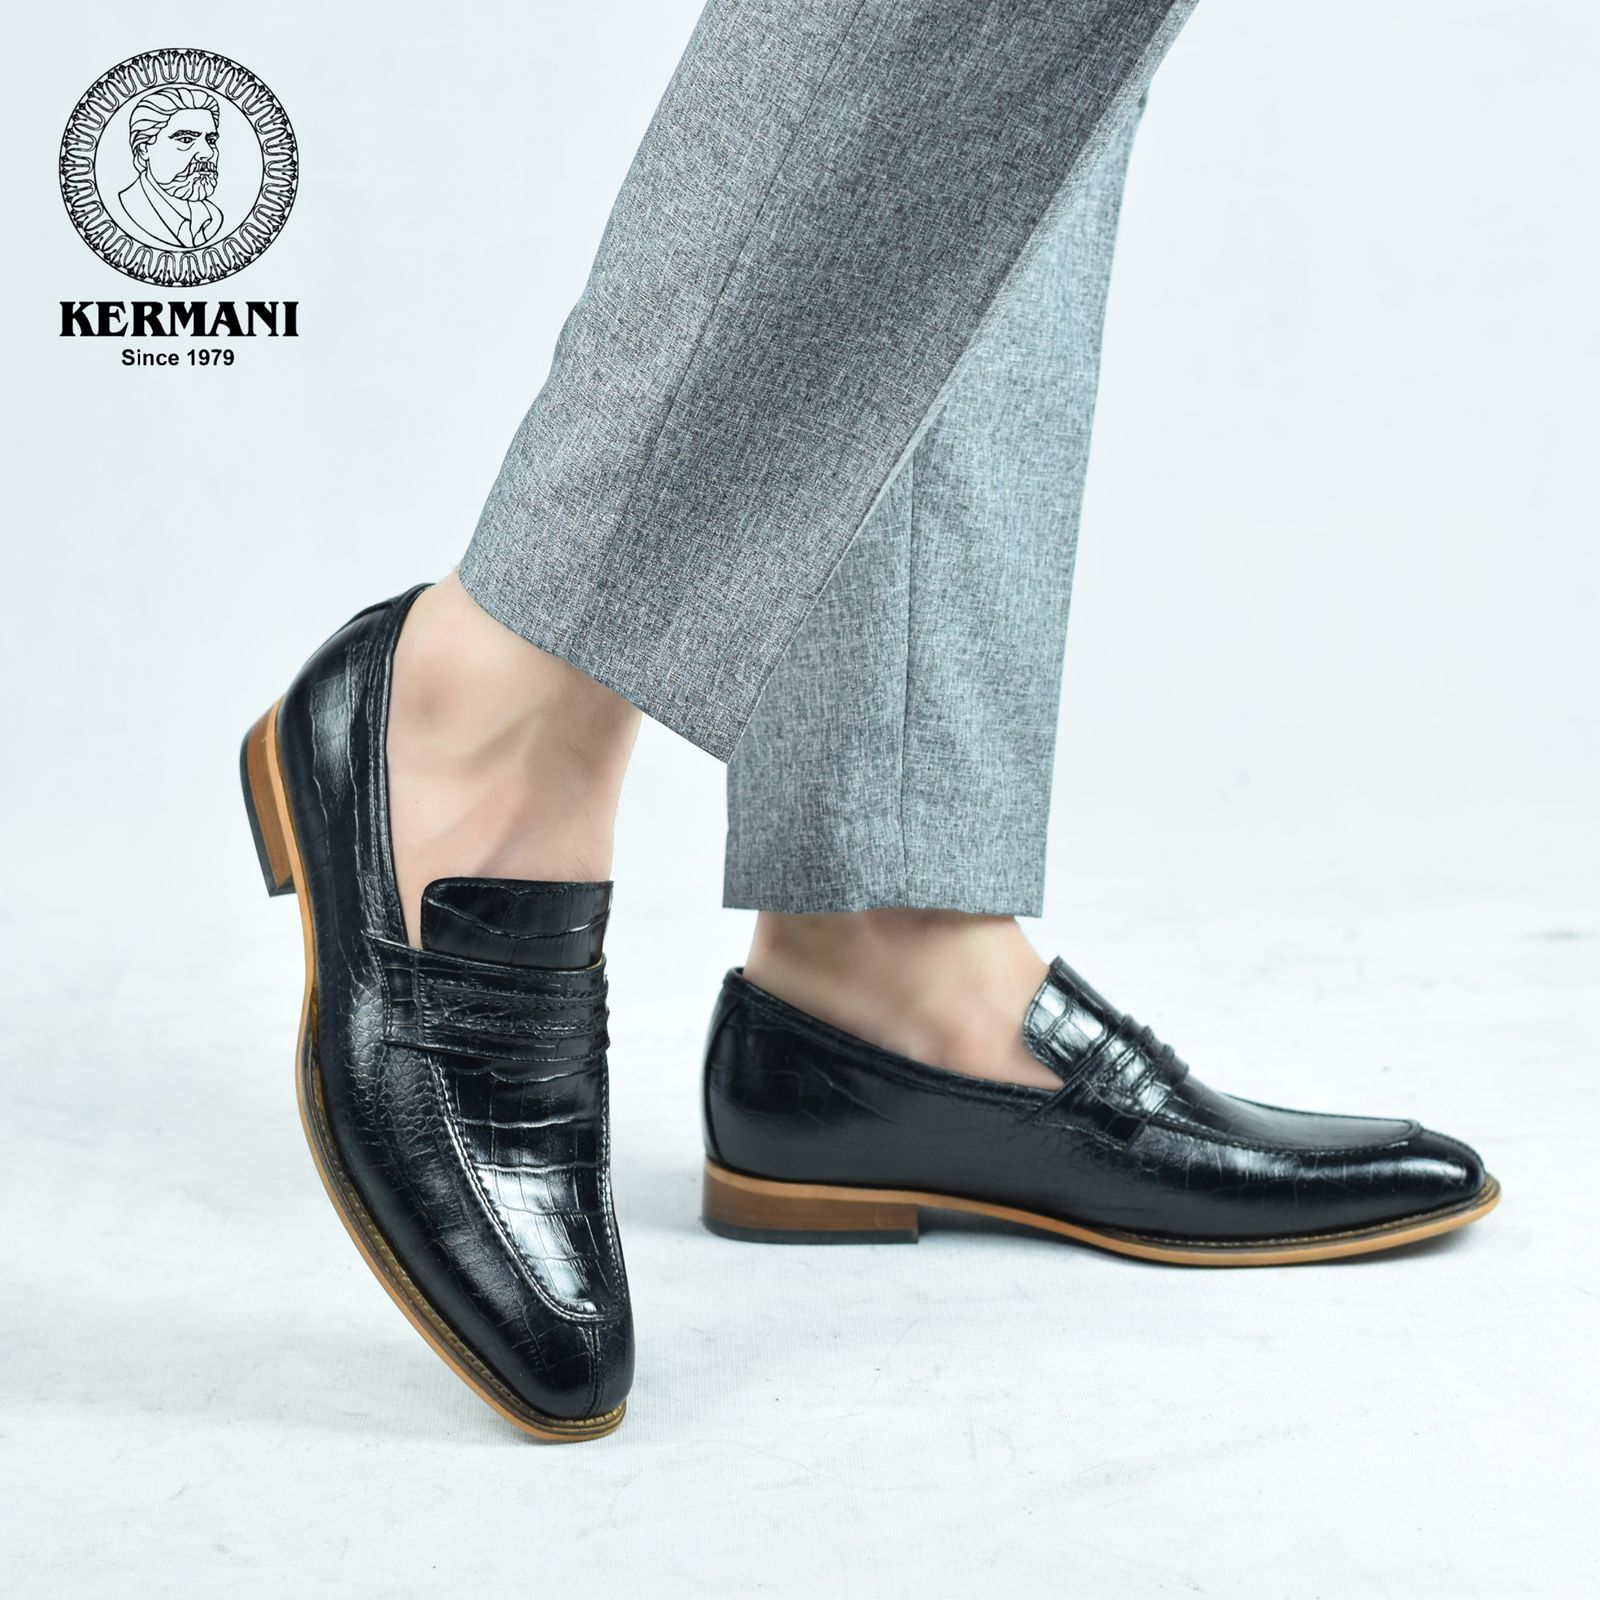 کفش مردانه کرمانی مدل چرم دستدوز طبیعی کروکو کد 1064 رنگ مشکی -  - 2